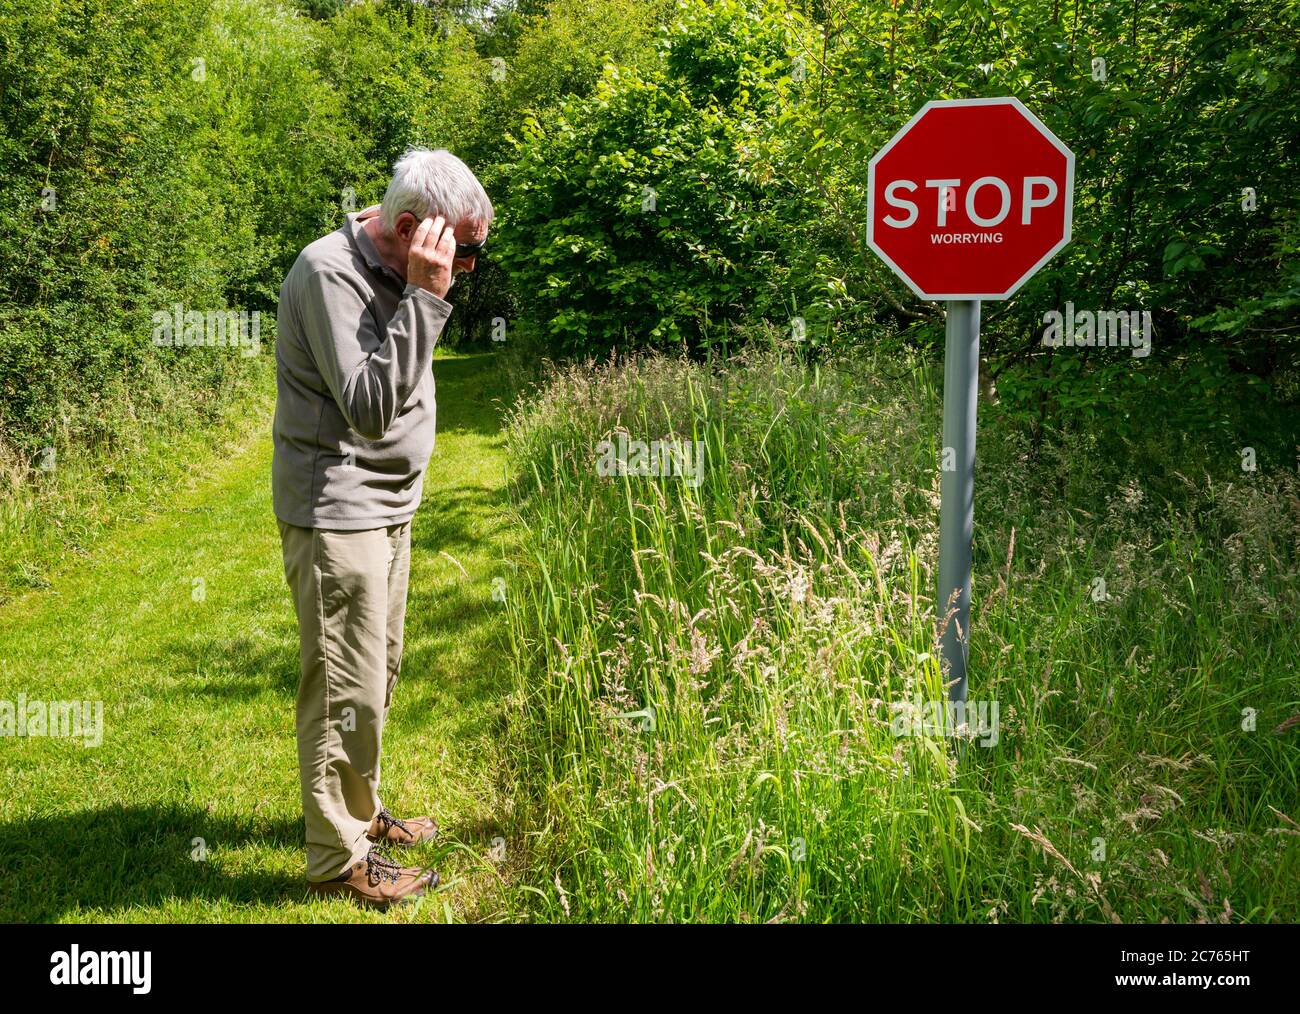 Peculiar señal de advertencia de dejar de preocuparse en el camino del país con el hombre mayor mirando preocupado, Gifford, East Lothian, Escocia, Reino Unido Foto de stock